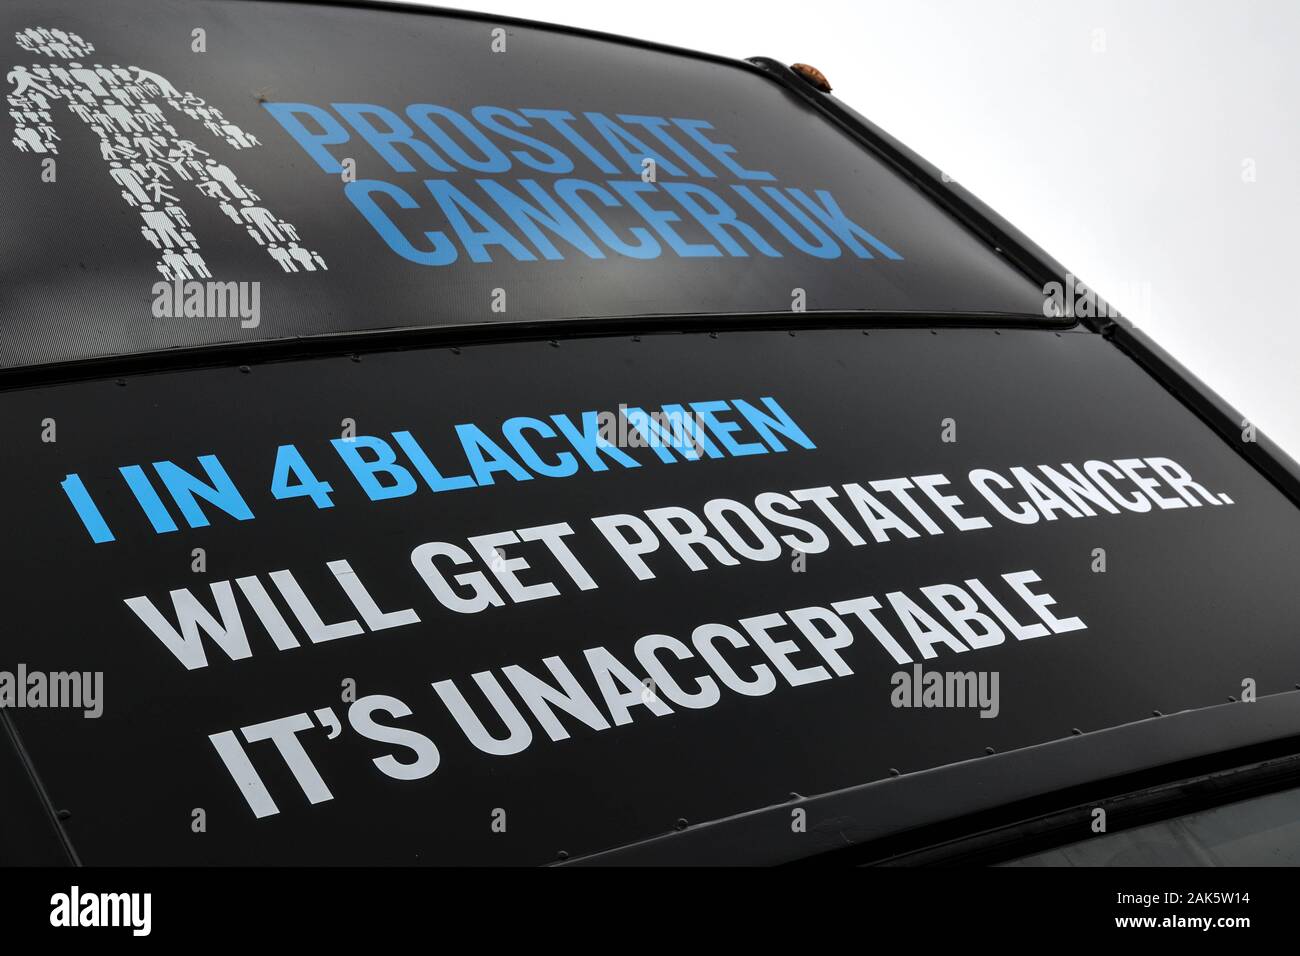 Werbekampagne Doppeldeckerbus mit Werbebeschilderung für die Bildungsroadshow "Prostate Cancer UK" Stockfoto